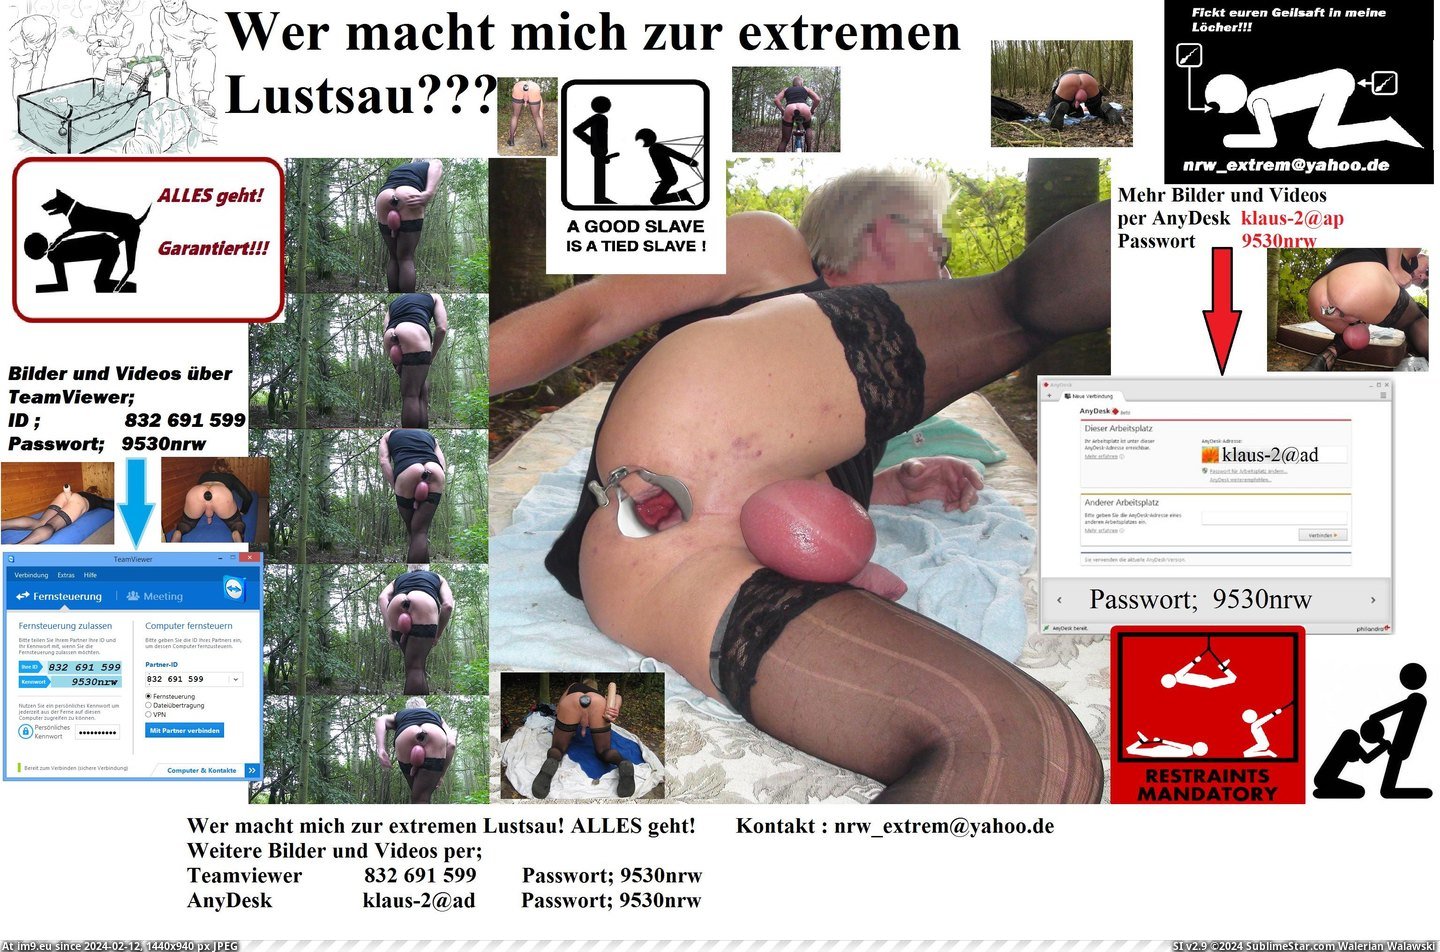 #Bdsm #3072x2018 #Sklave #Schwul #Zeigegeil #Klaus #Nrw #Schwuchtel nrw Pic. (Image of album nrw_extrem die geile Sau))